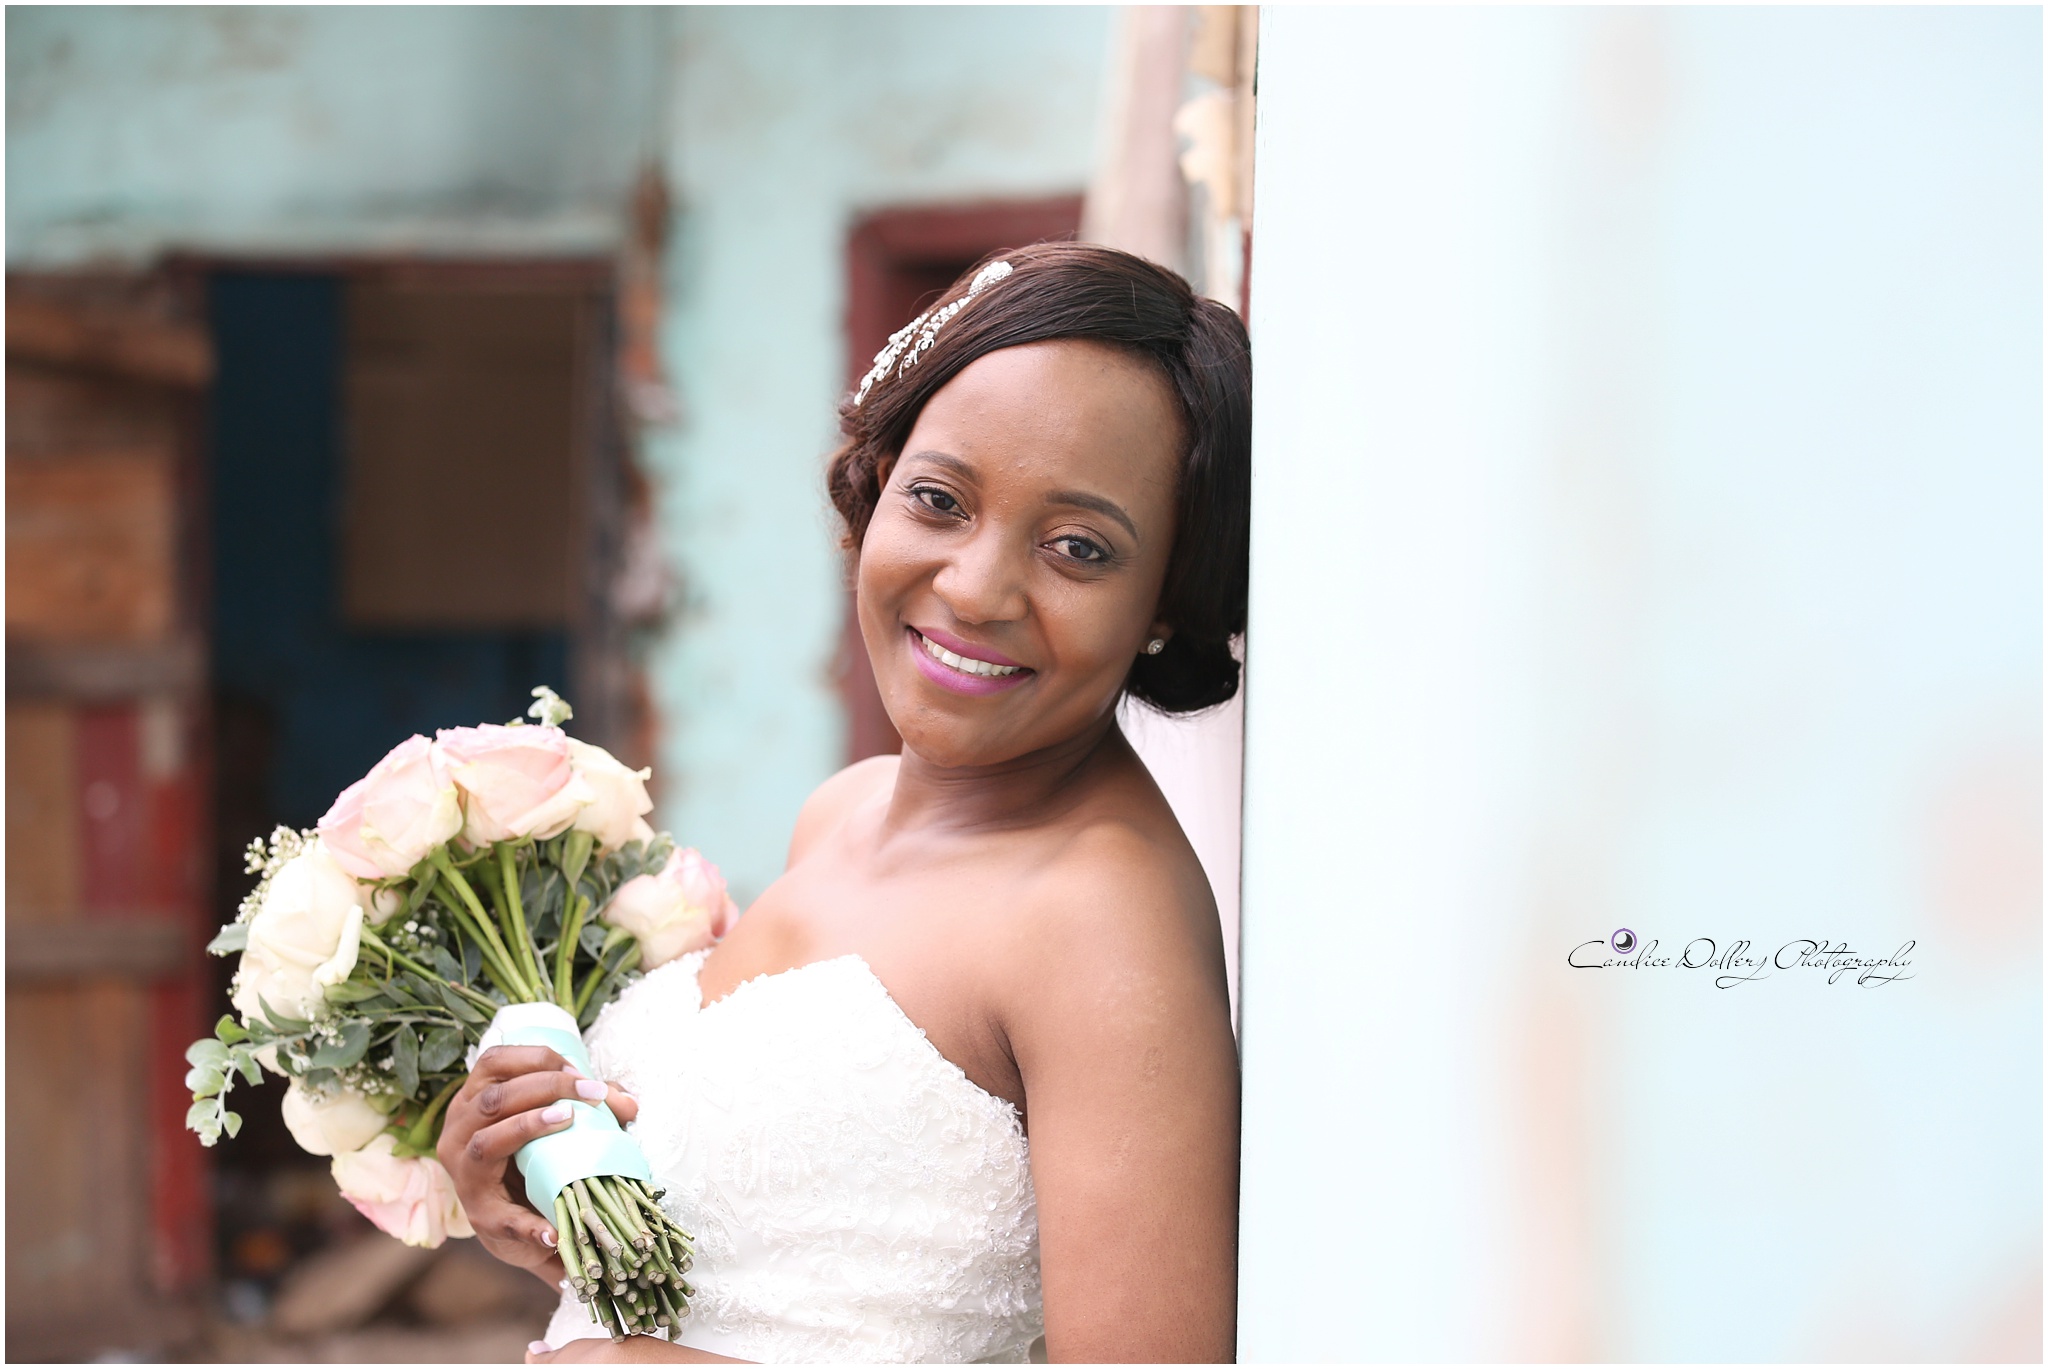 Masivuye & Khuselo's Wedding - Candice Dollery Photography_7289